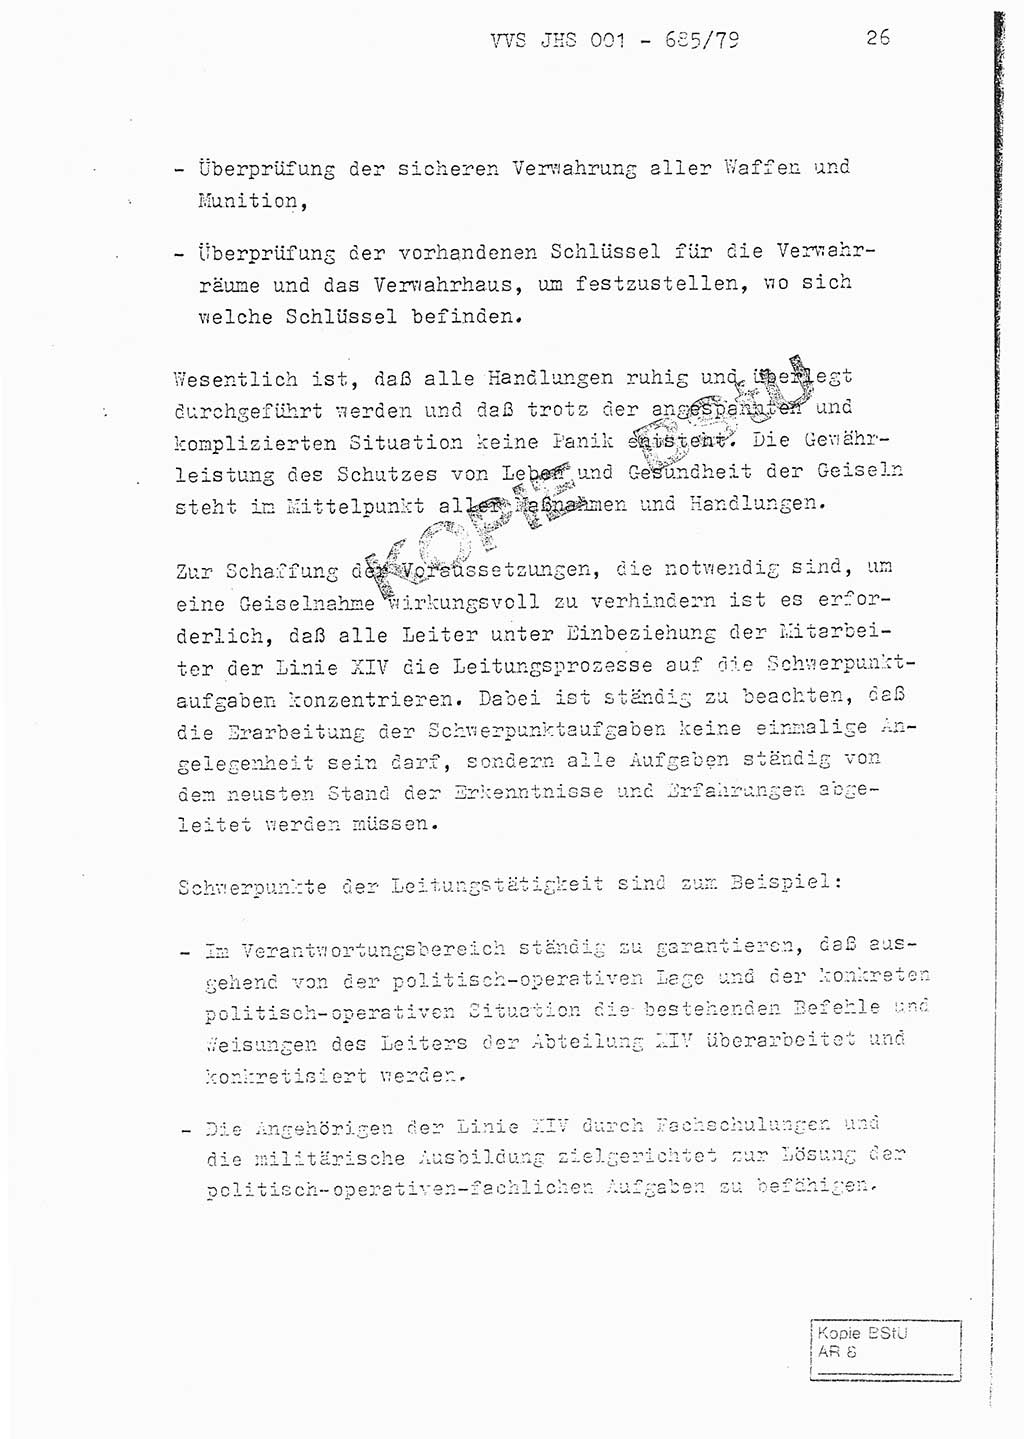 Fachschulabschlußarbeit Oberleutnant Helmut Peckruhn (BV Bln. Abt. ⅩⅣ), Ministerium für Staatssicherheit (MfS) [Deutsche Demokratische Republik (DDR)], Juristische Hochschule (JHS), Vertrauliche Verschlußsache (VVS) 001-685/79, Potsdam 1979, Seite 26 (FS-Abschl.-Arb. MfS DDR JHS VVS 001-685/79 1979, S. 26)